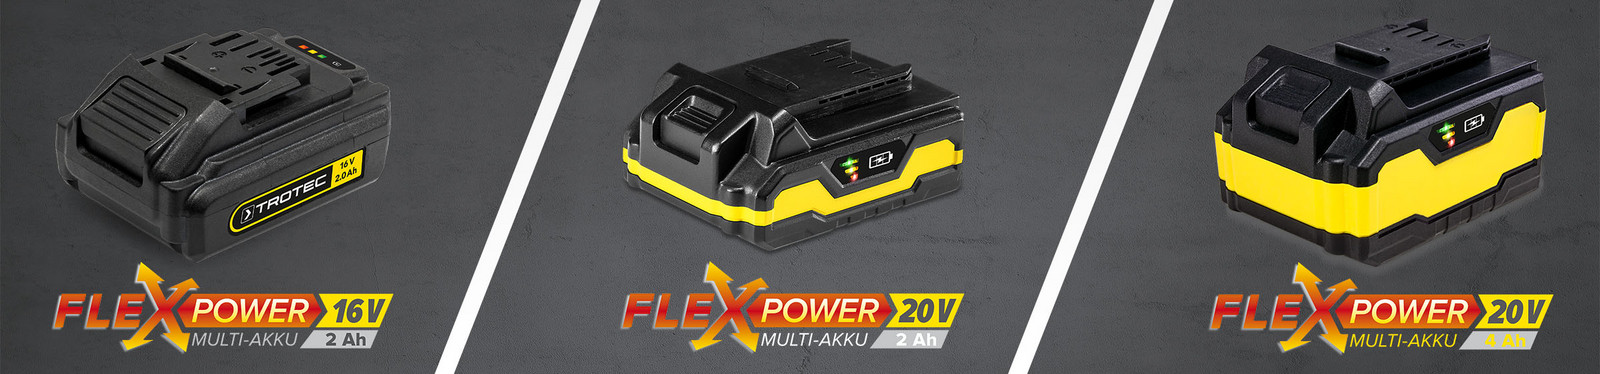 Flexpower – el innovador sistema de batería multiuso de Trotec